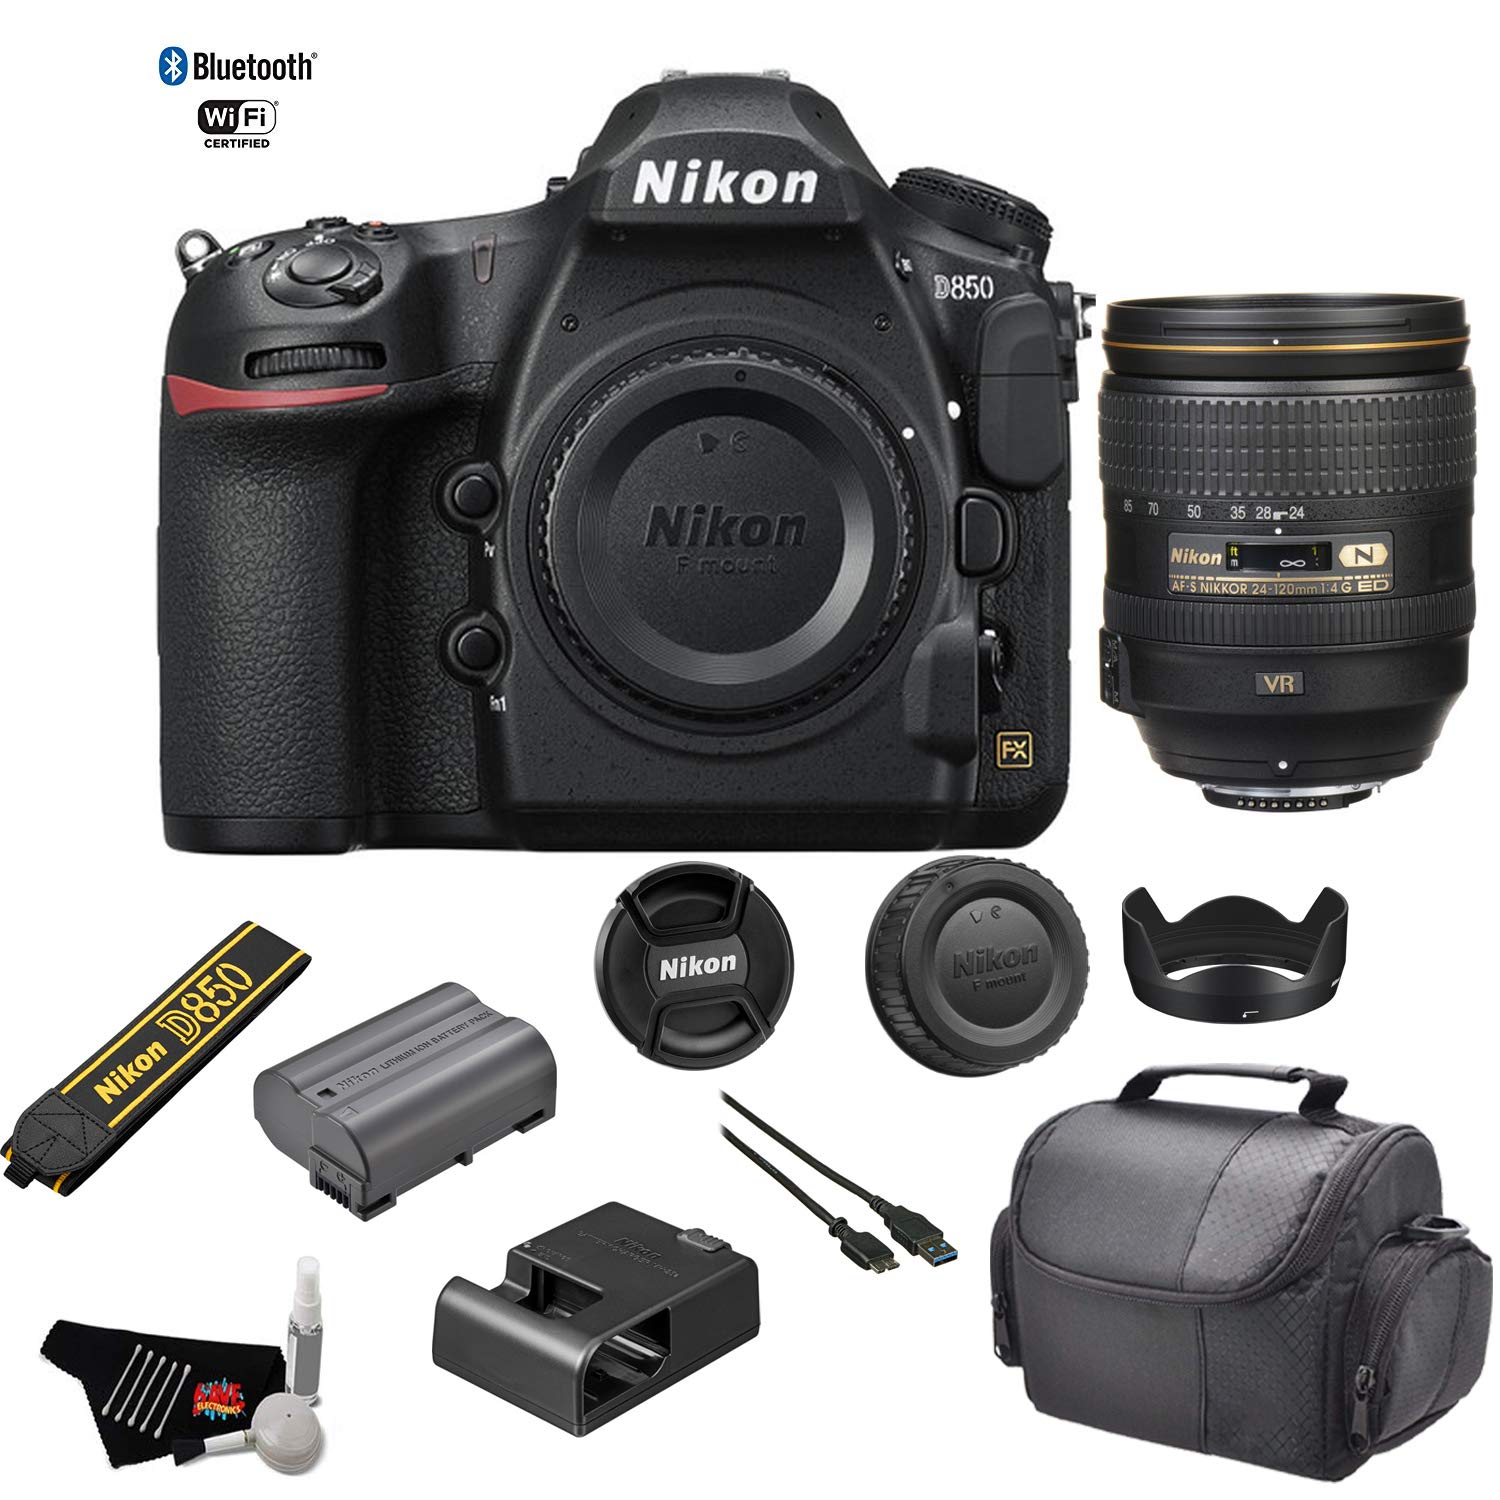 Nikon D850 DSLR Camera (Body) 1585 - Kit with Nikon AF-S NIKKOR 24-120mm f/4G ED VR Lens + More - International Model